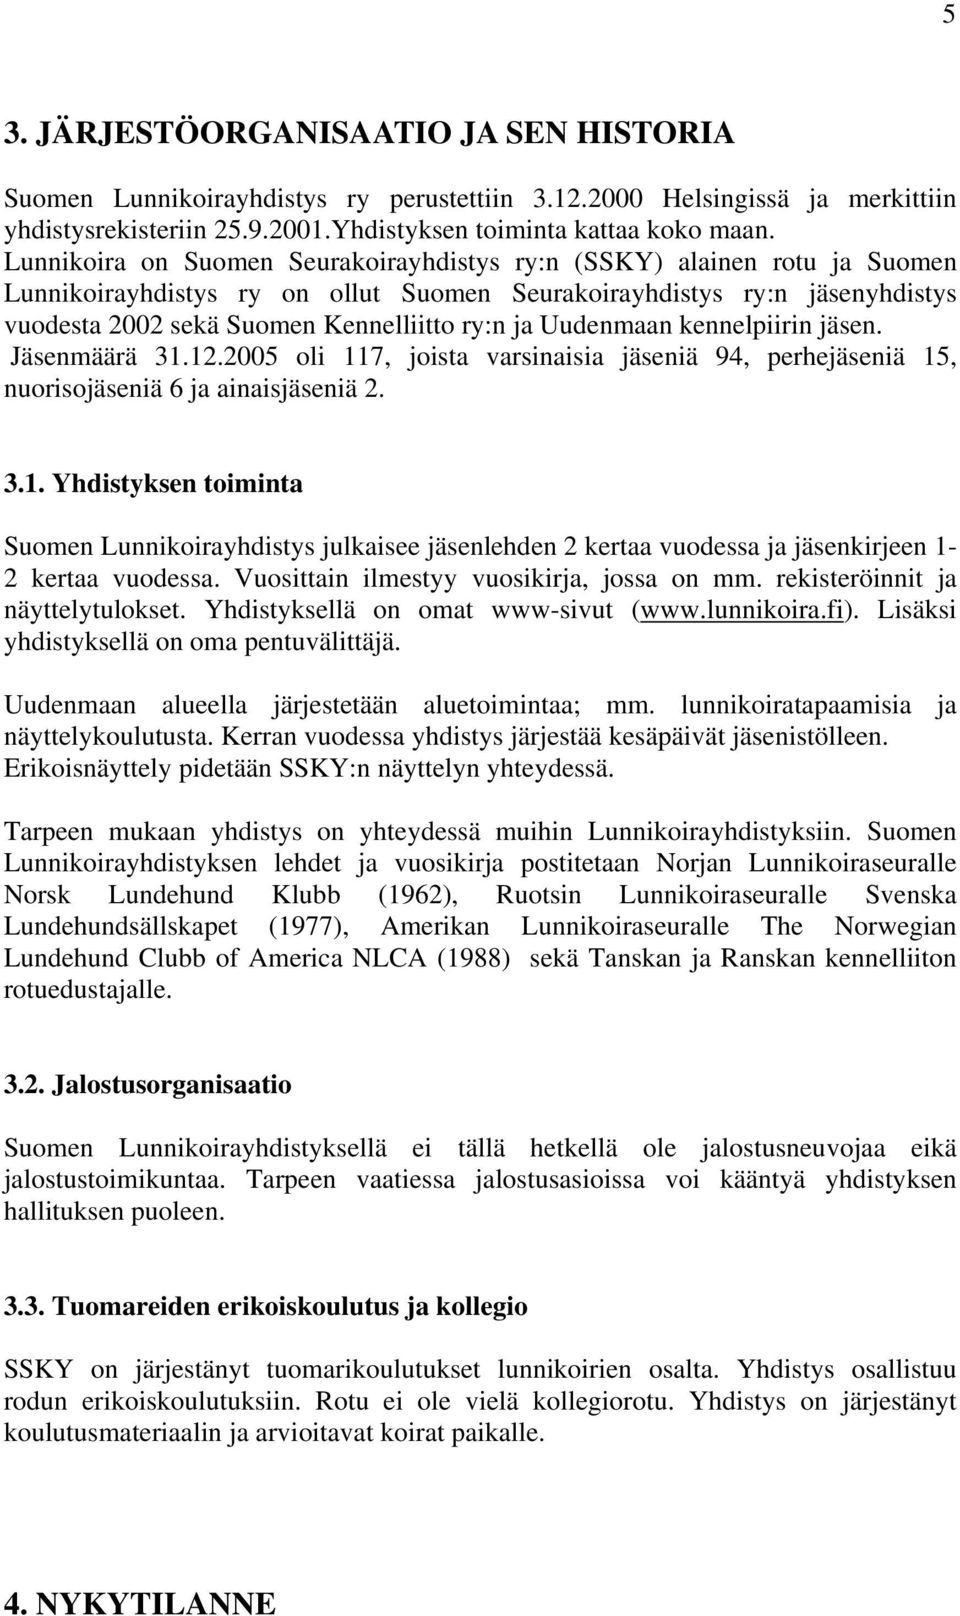 Uudenmaan kennelpiirin jäsen. Jäsenmäärä 31.12.2005 oli 117, joista varsinaisia jäseniä 94, perhejäseniä 15, nuorisojäseniä 6 ja ainaisjäseniä 2. 3.1. Yhdistyksen toiminta Suomen Lunnikoirayhdistys julkaisee jäsenlehden 2 kertaa vuodessa ja jäsenkirjeen 1-2 kertaa vuodessa.